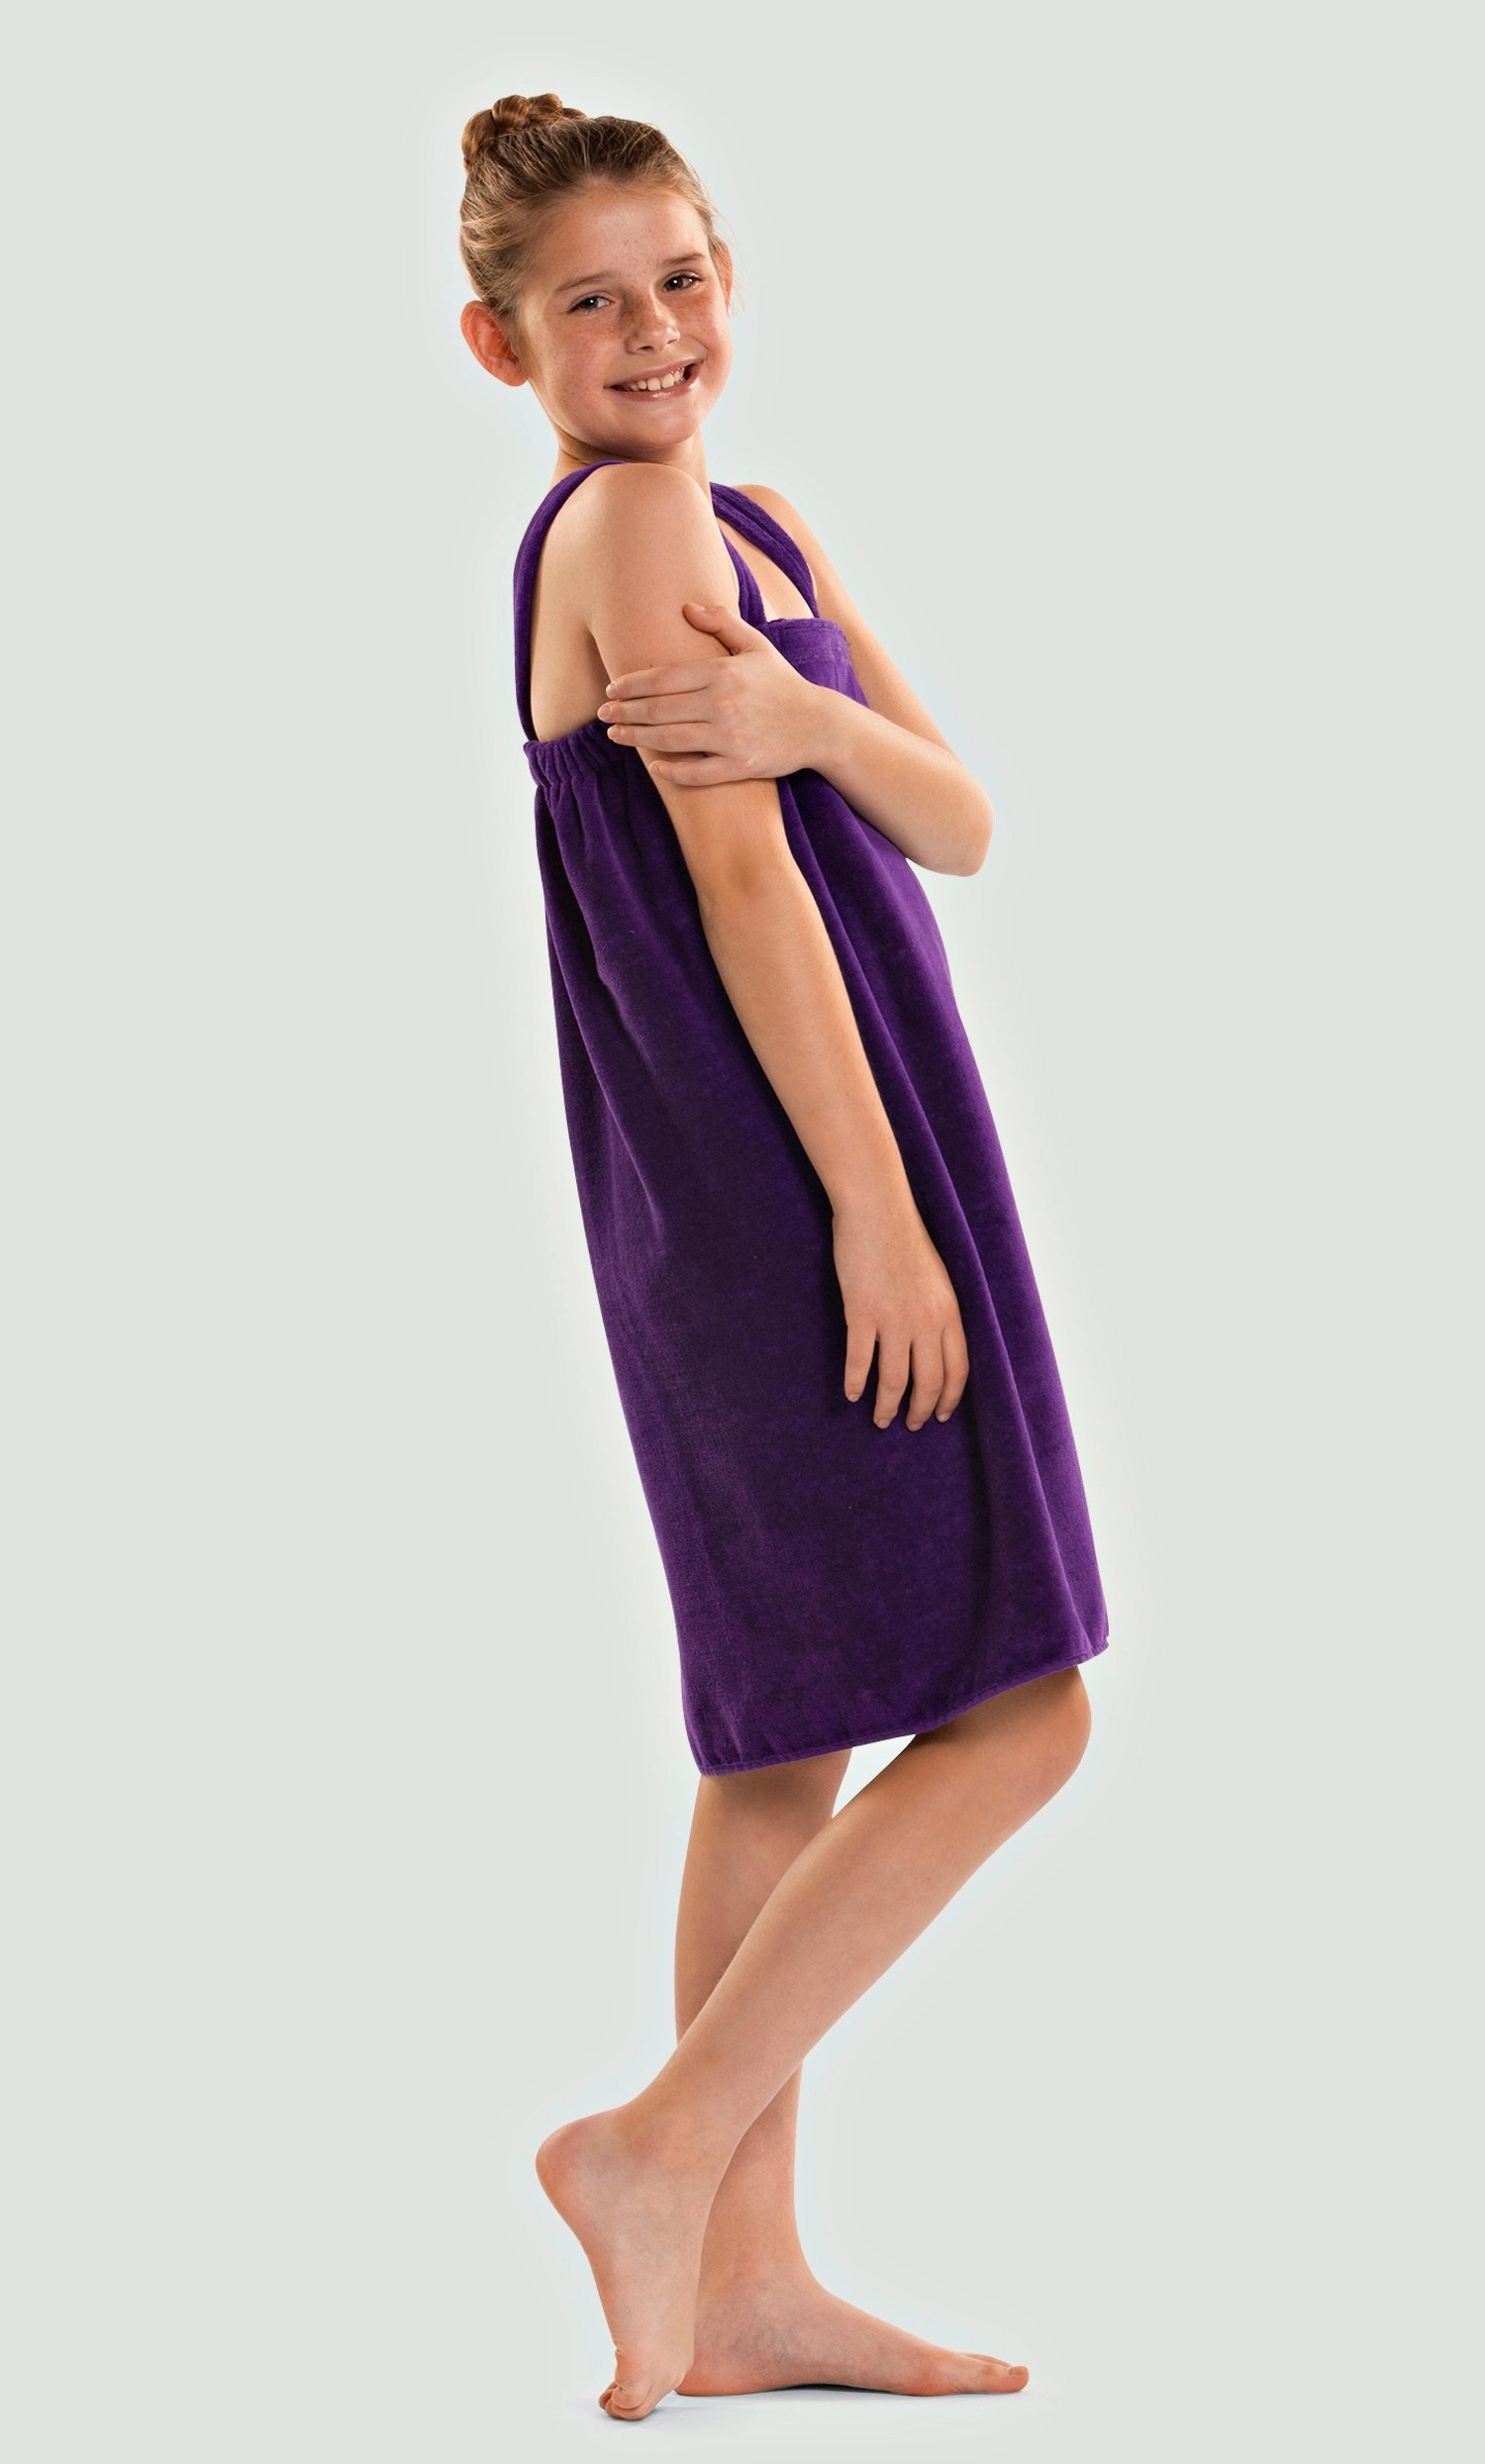 http://robemart.com/images/thumbnails/detailed/3/Cotton-Terry-Purple-Velour-Cloth-Kids-Spa-Pool-Wrap--Bath-Towel-Wrap5.webp